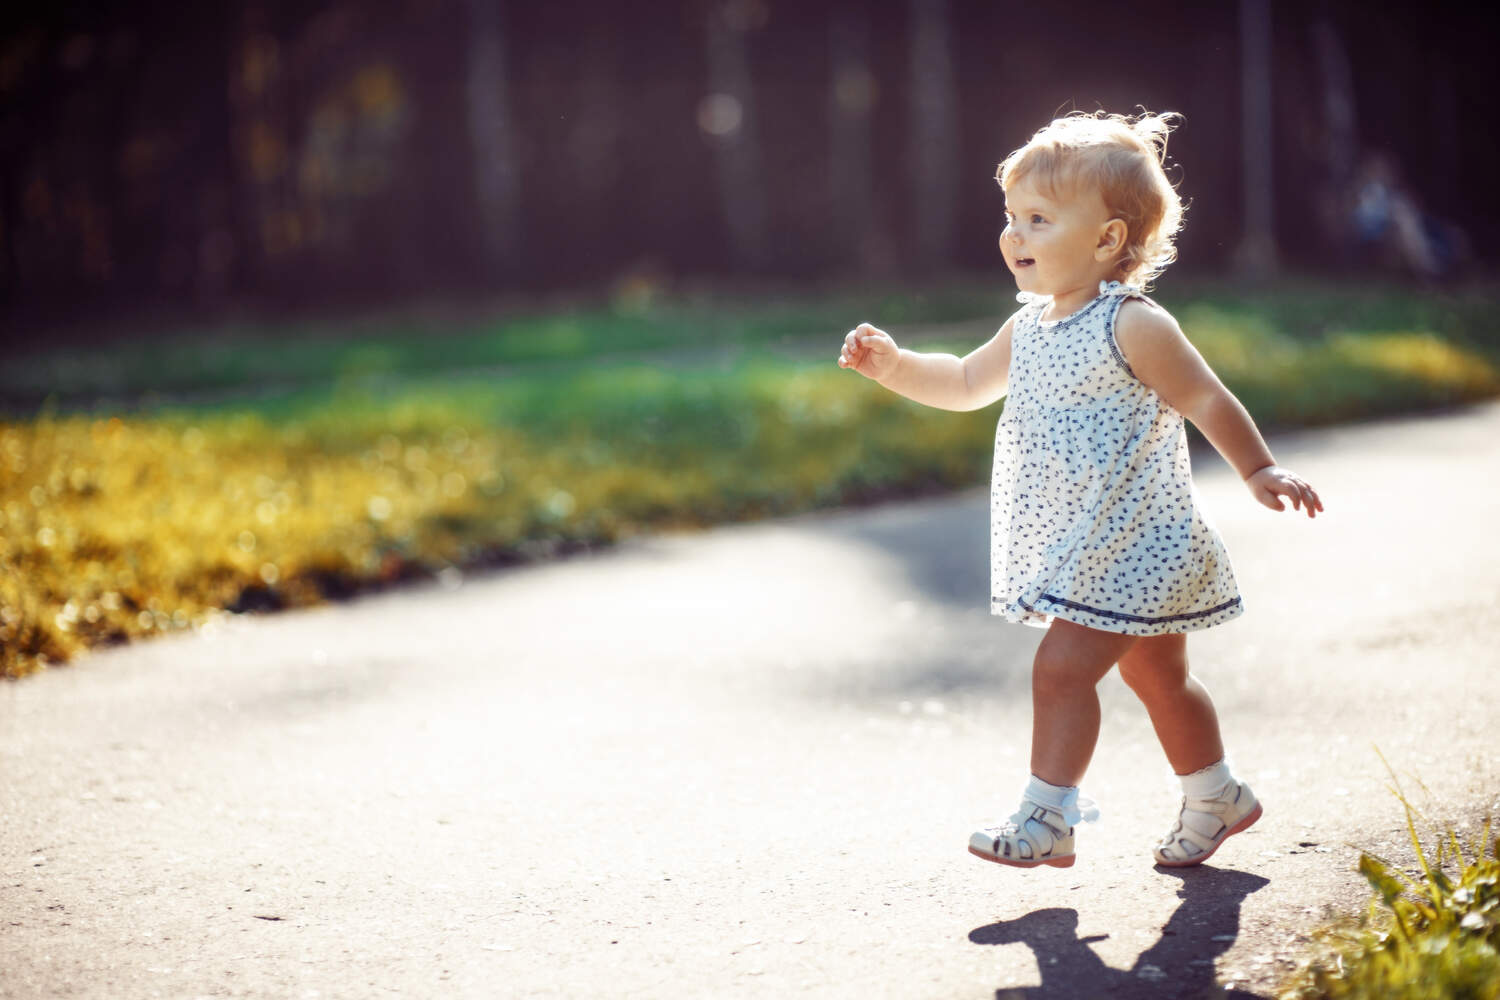 A little girl walking